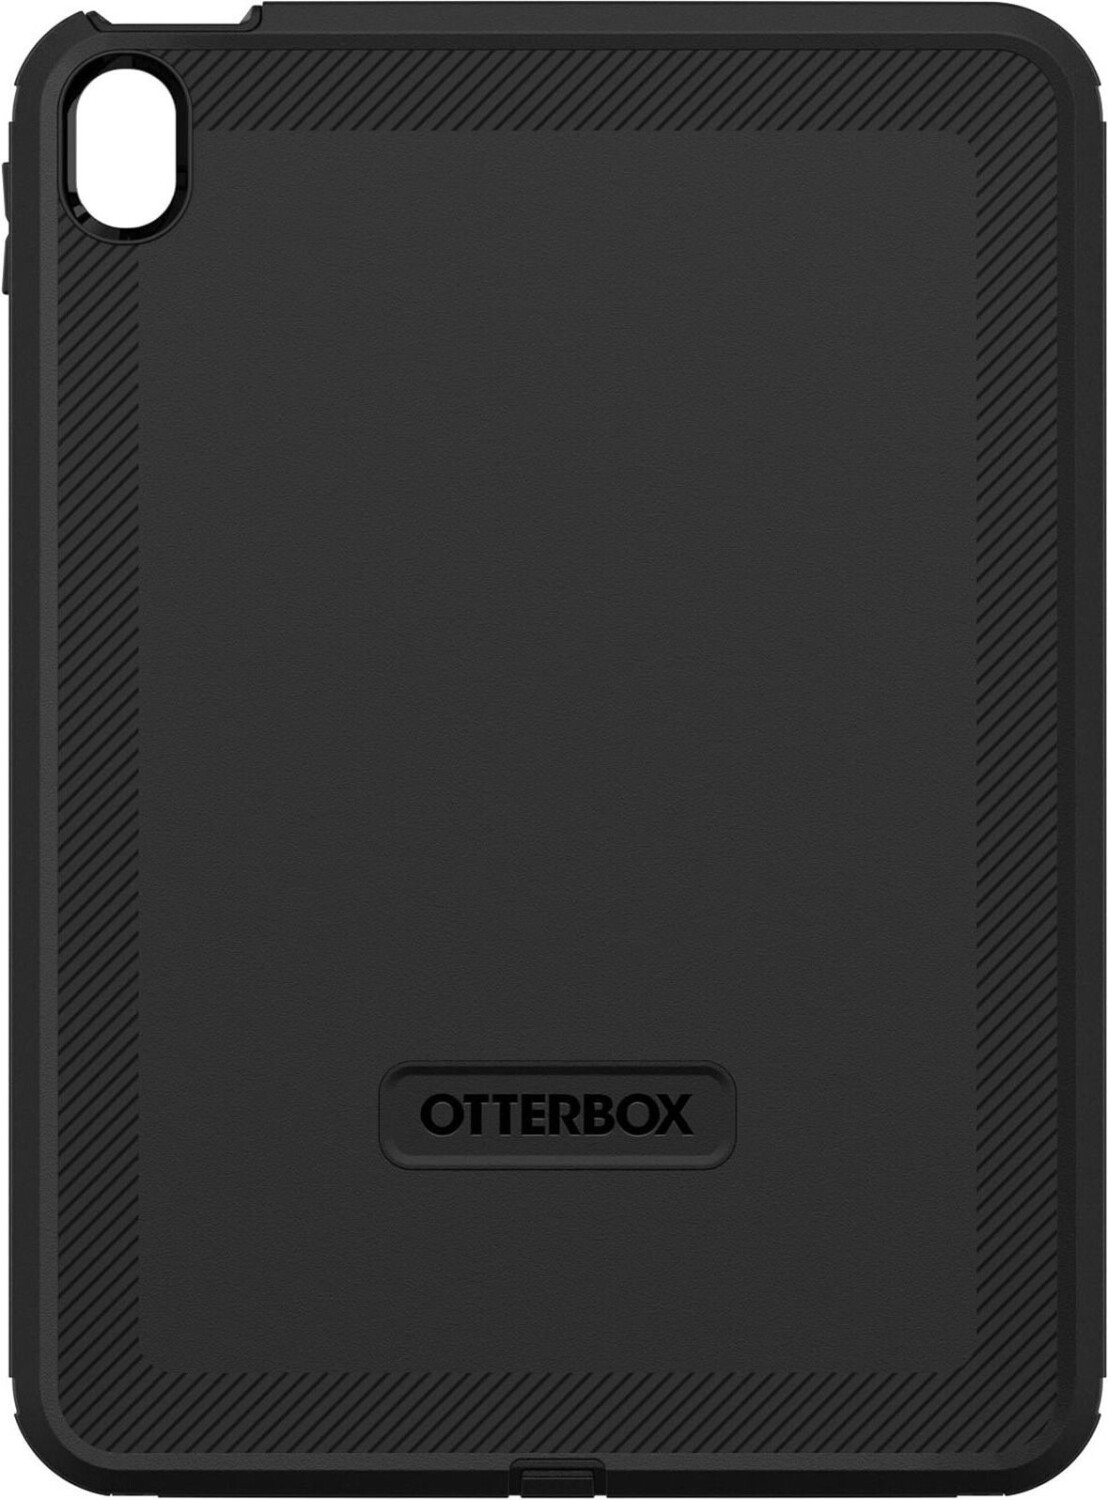 OtterBox Defender iPad 10th gen schwarz - Pro Pack (77-89955)